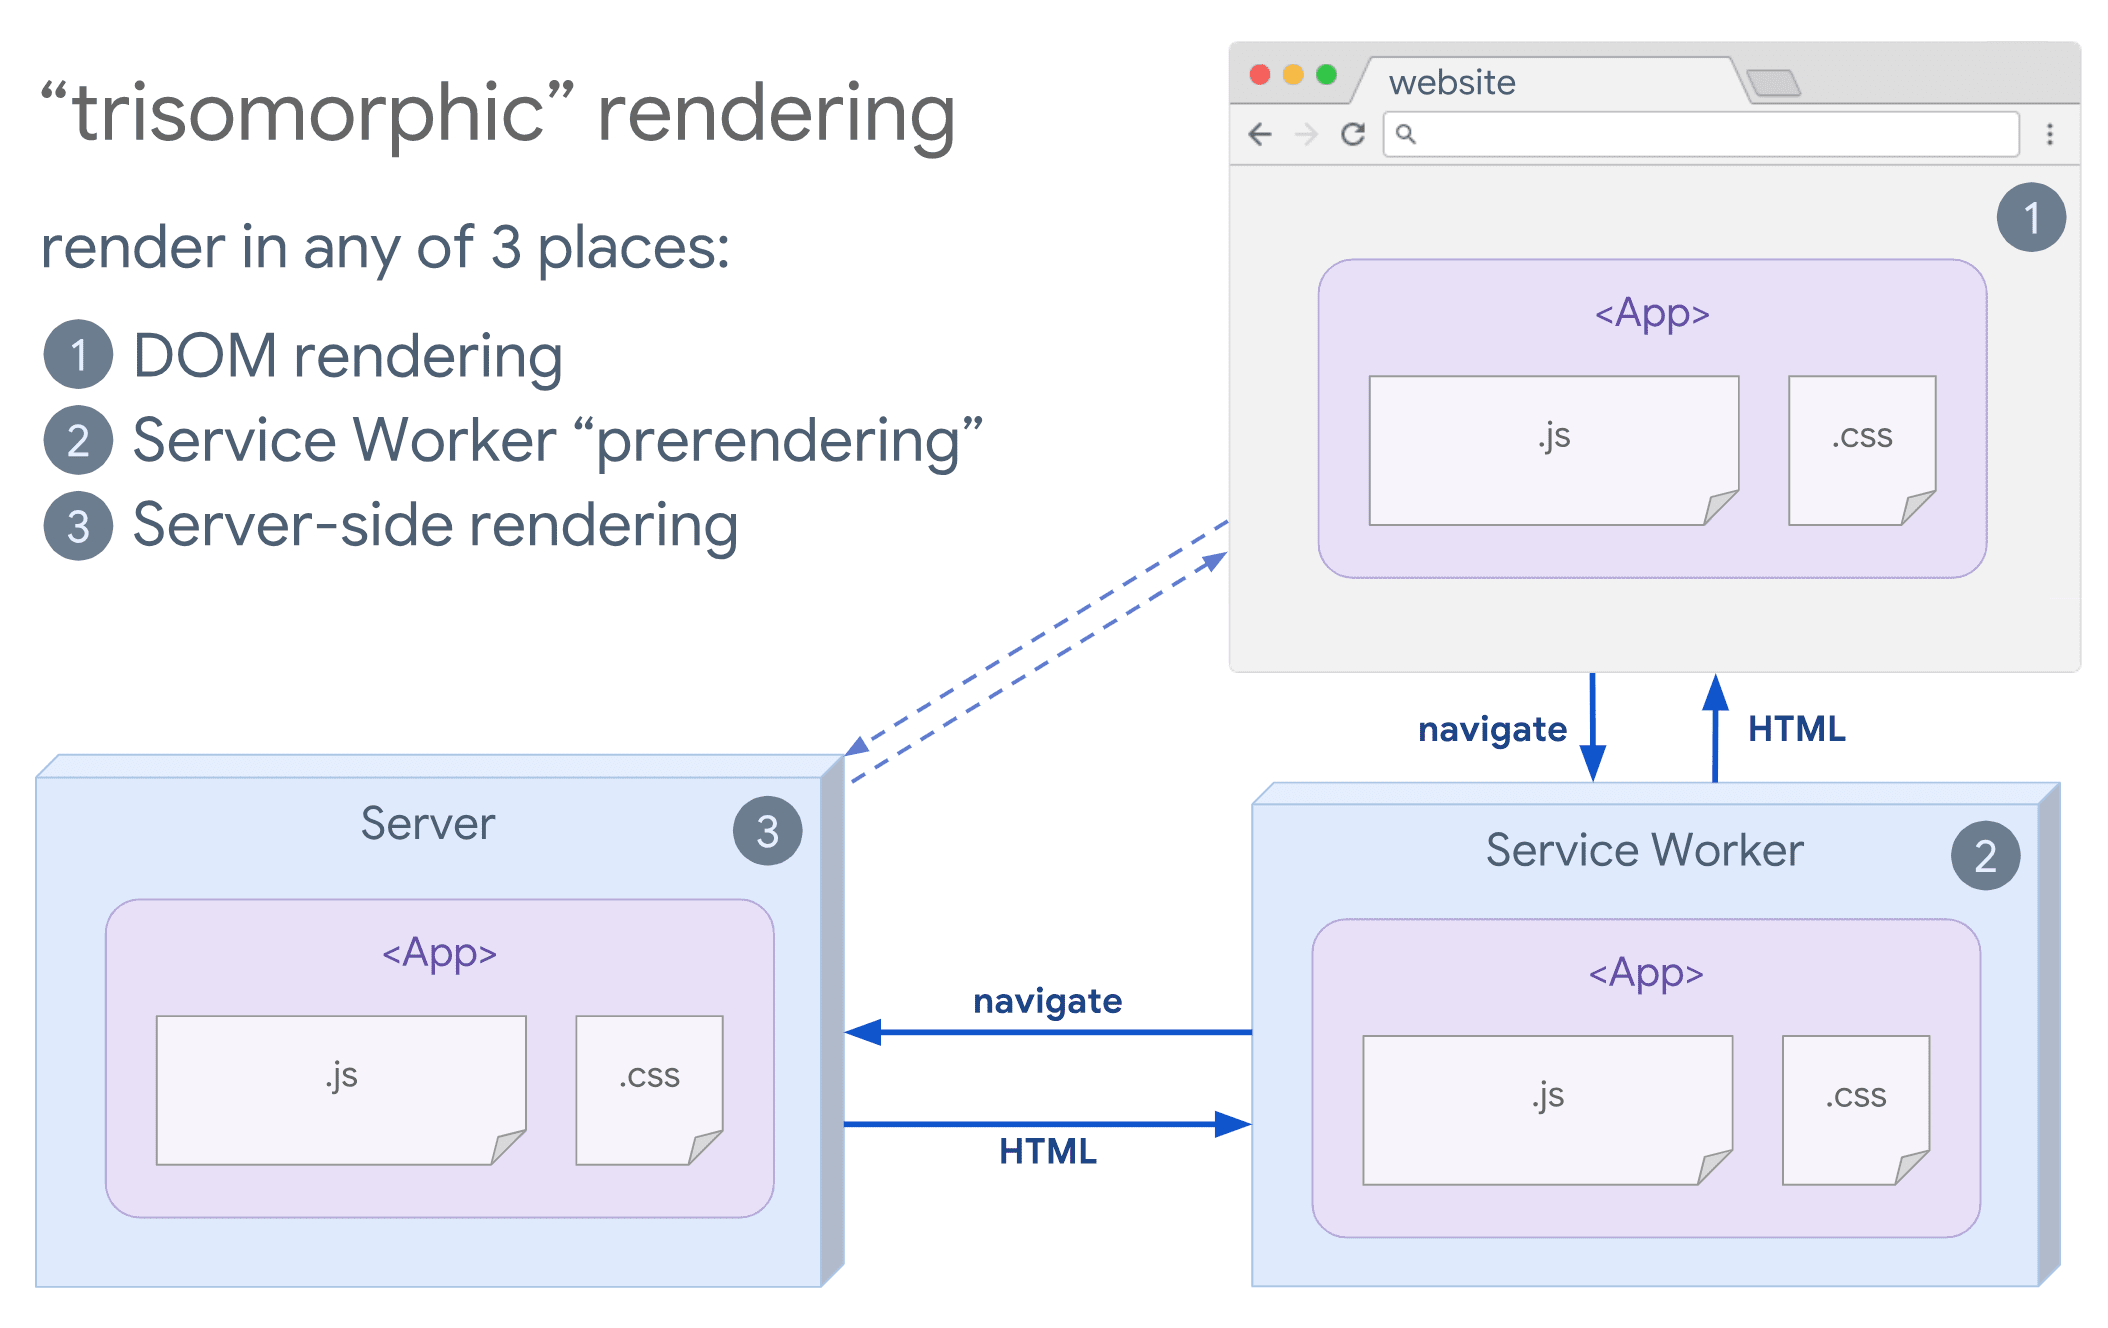 Diagramm eines trisomorphen Renderings, das zeigt, wie ein Browser und ein Service Worker mit dem Server kommunizieren